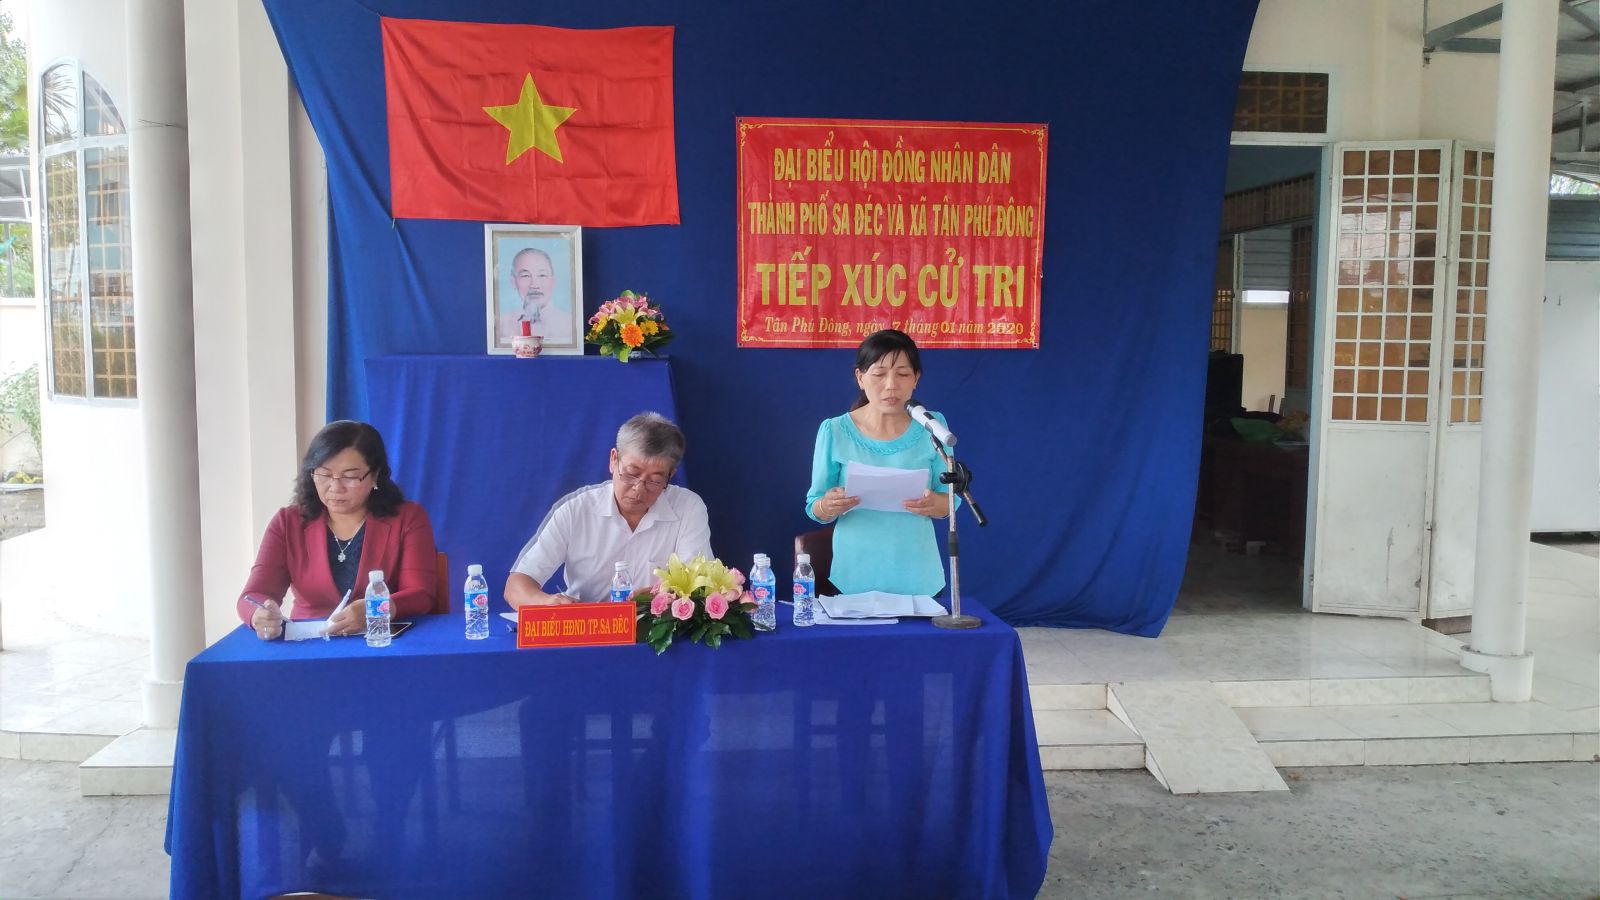 Bà Nguyễn Thị Mai Hồng thông qua báo cáo kết quả kỳ họp HĐND TP lần thứ 9